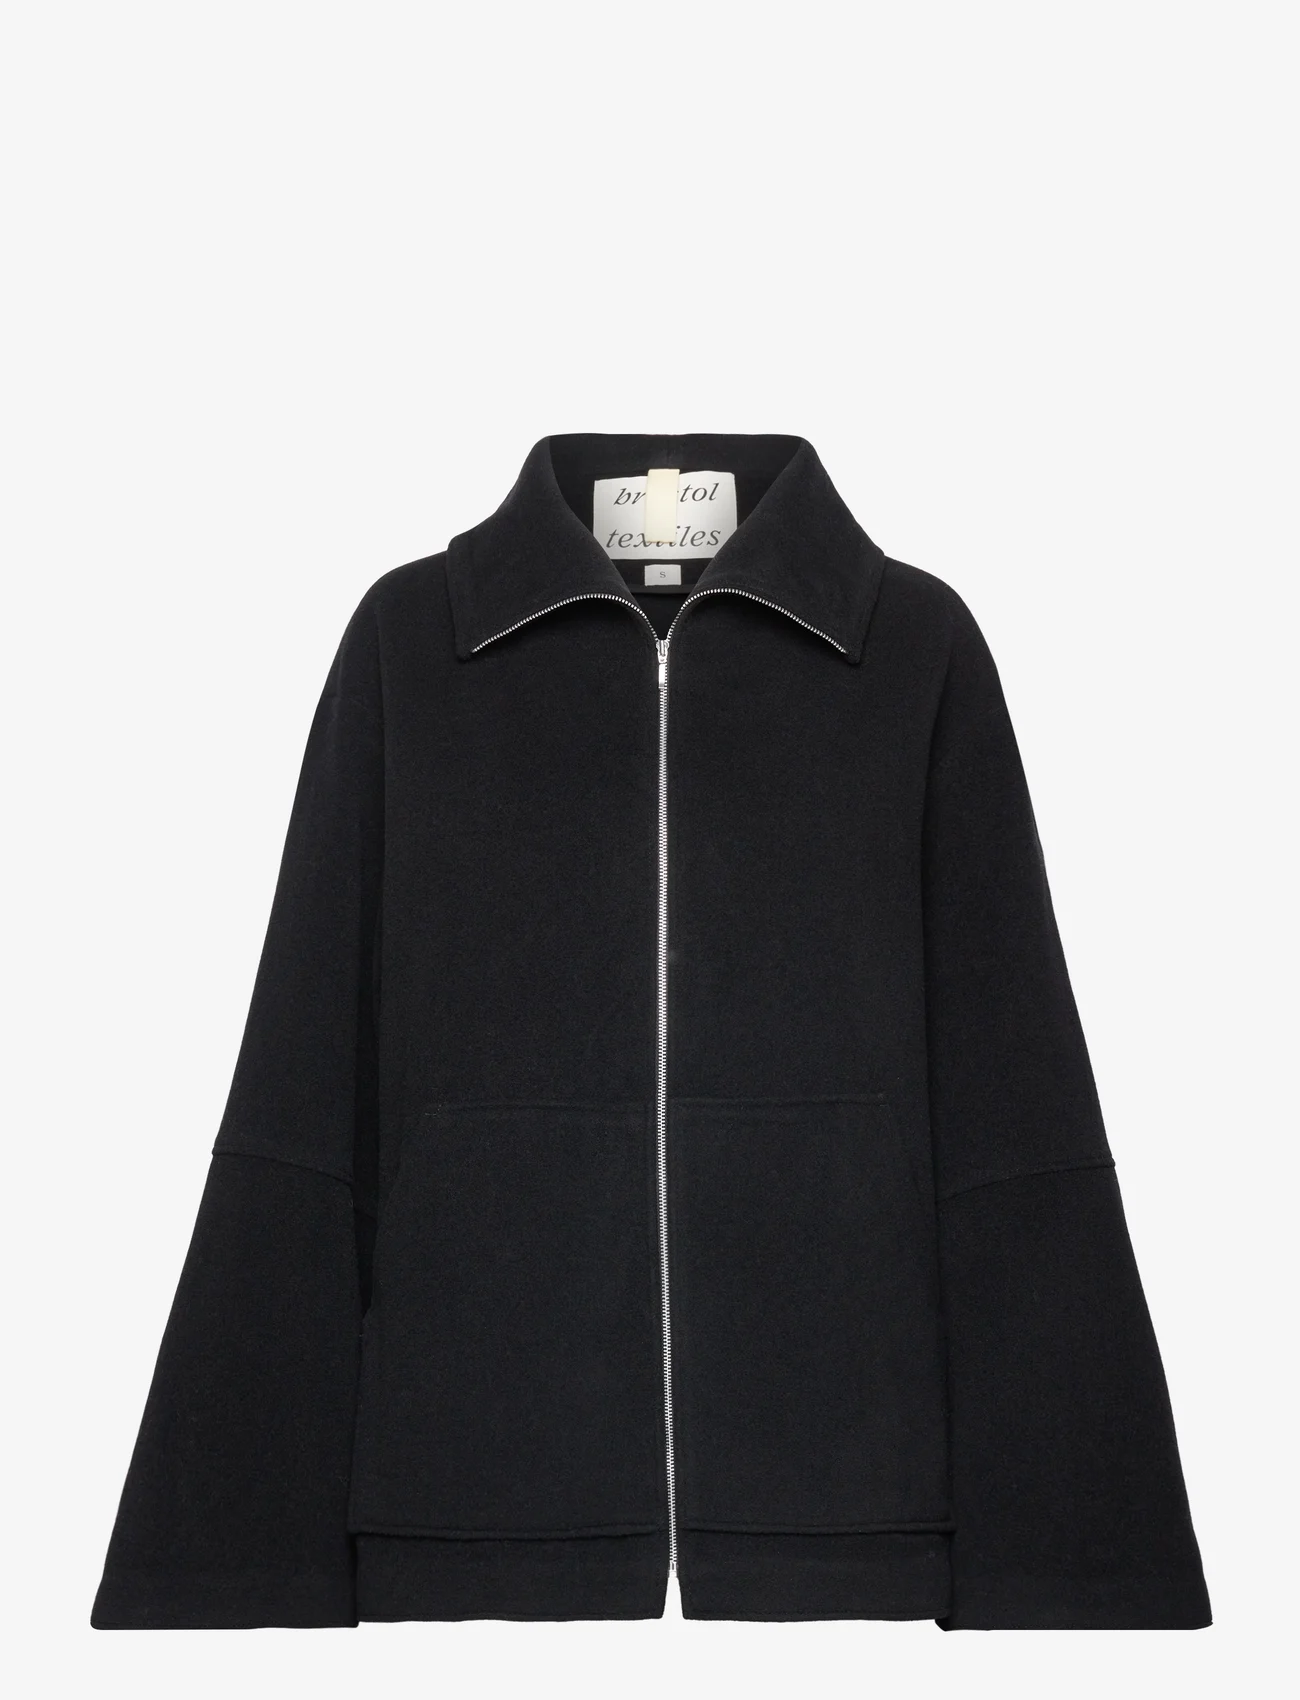 Brixtol Textiles - Aeryn-Jo - winter jacket - black - 0